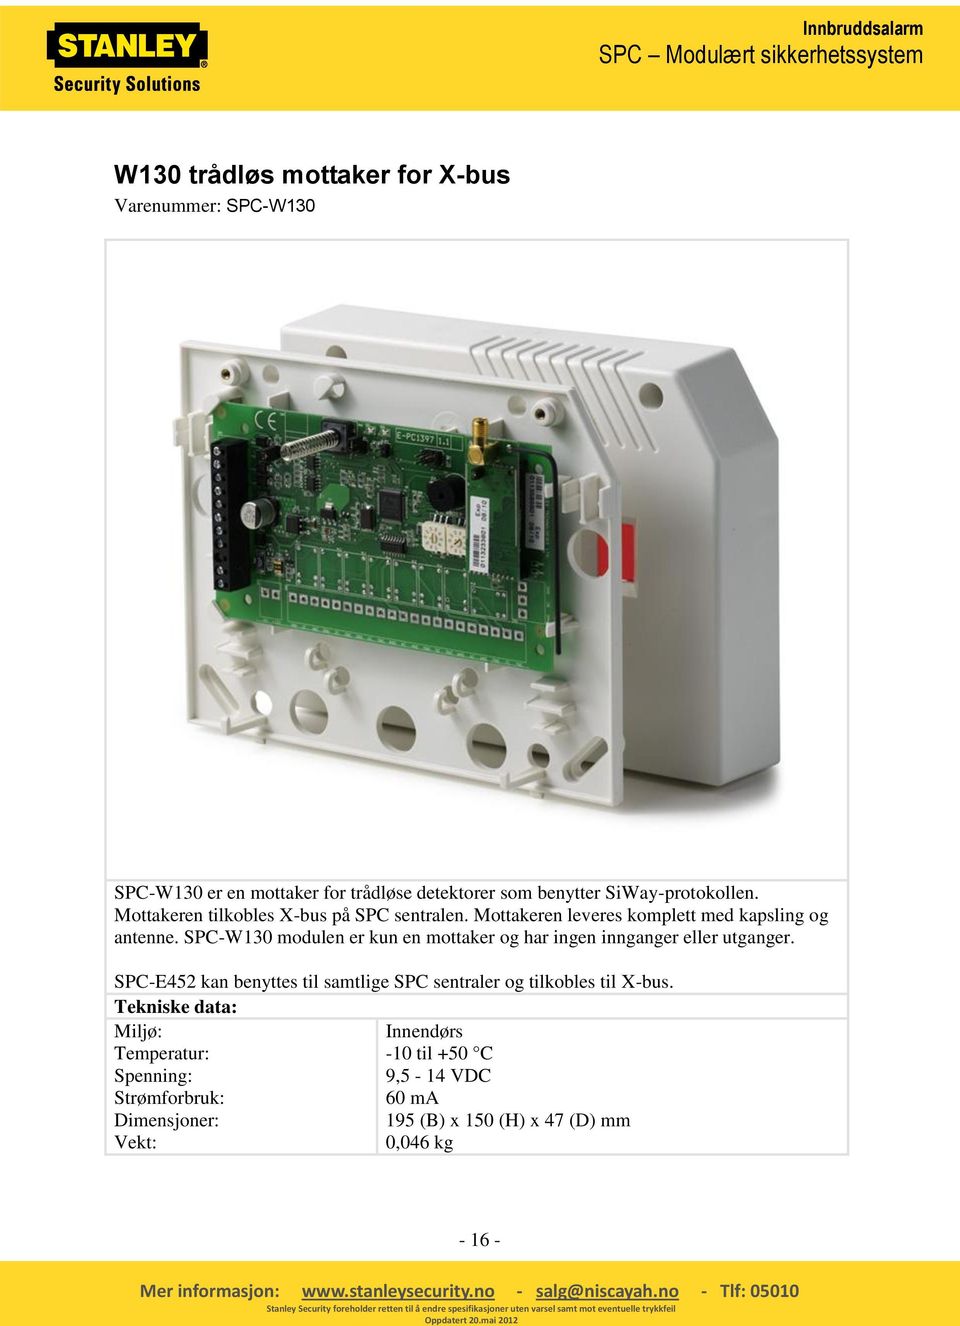 SPC-W130 modulen er kun en mottaker og har ingen innganger eller utganger.